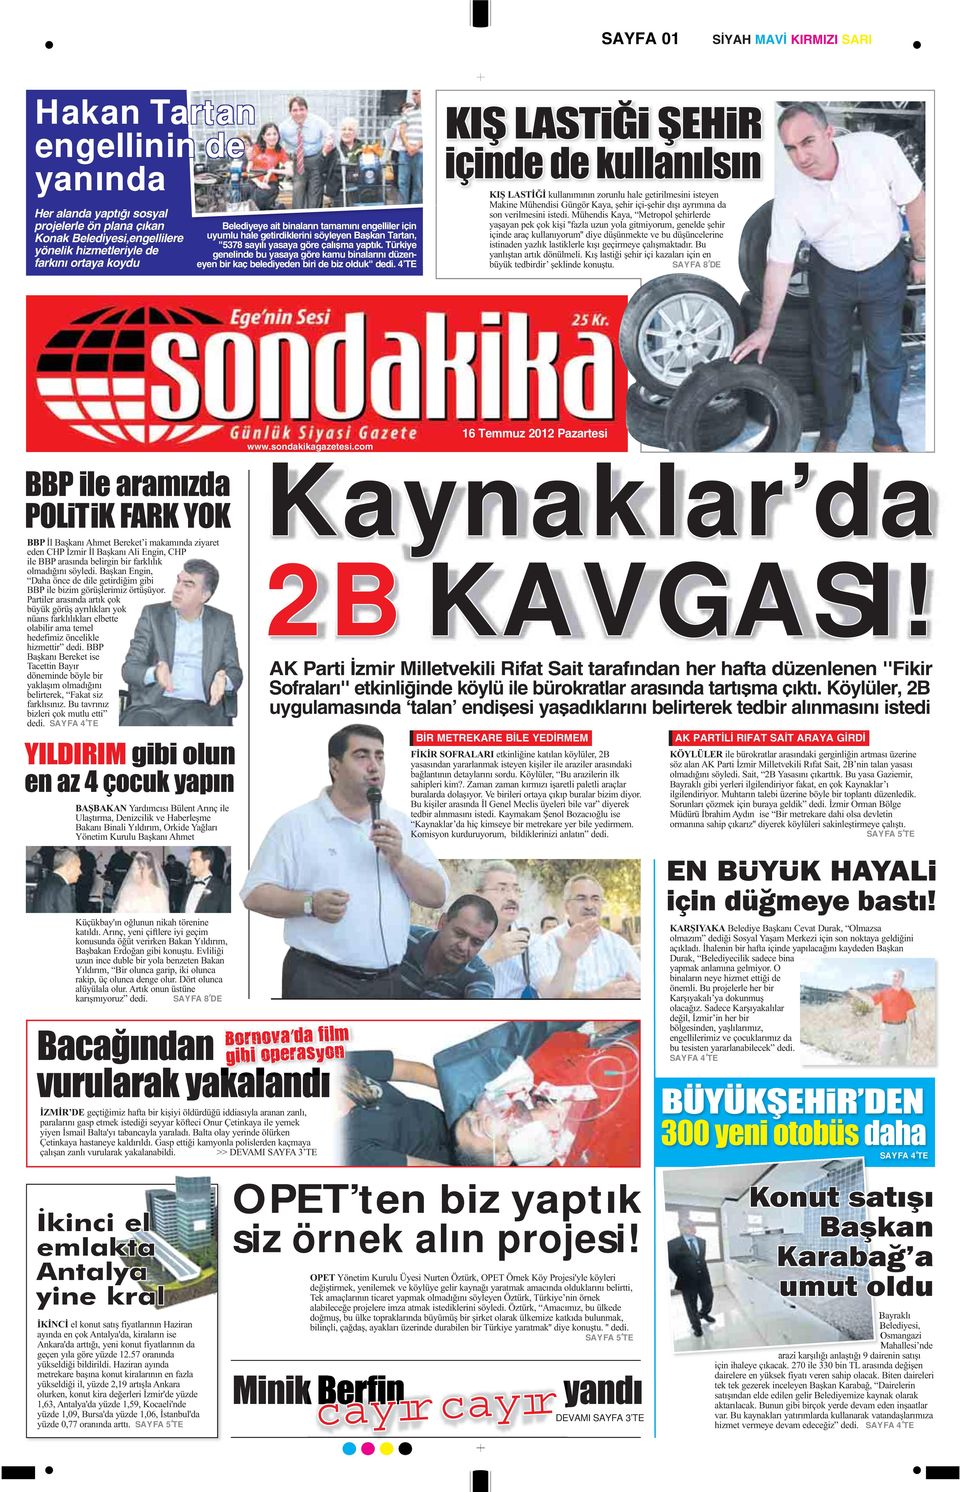 Türkiye genelinde bu yasaya göre kamu binalarını düzeneyen bir kaç belediyeden biri de biz olduk" dedi. 4 TE SAYFA 8 DE SAYFA 4 TE SAYFA 8 DE Kaynaklar da 2B KAVGASI! www.sondakikagazetesi.